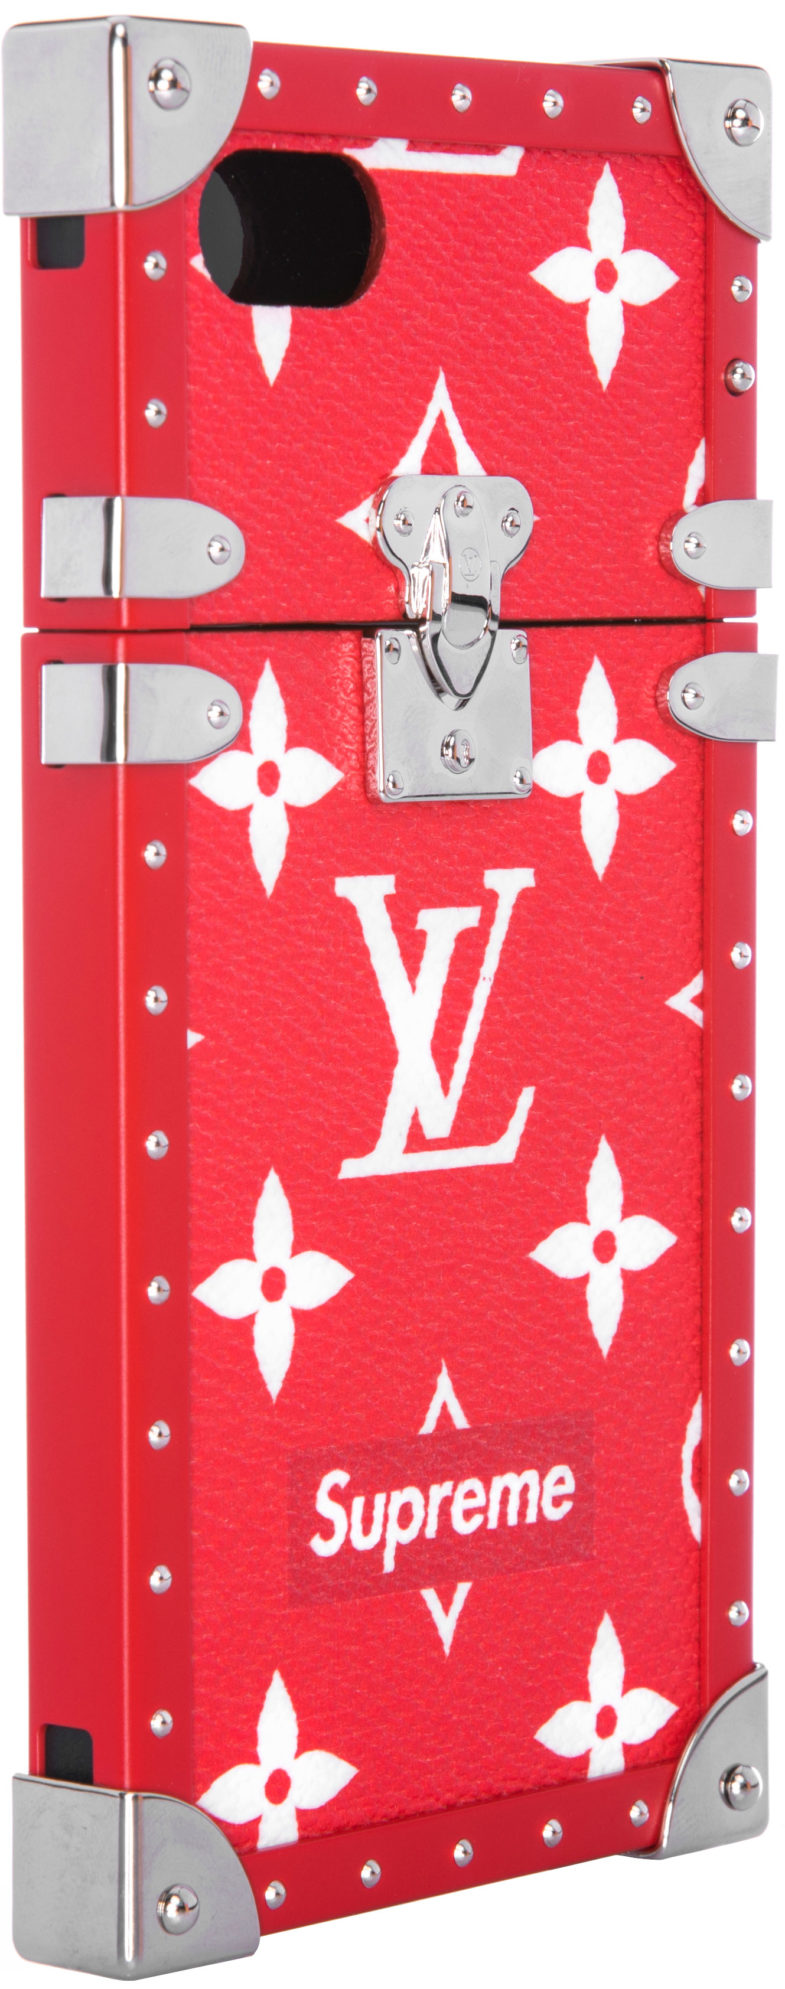 Louis Vuitton x Supreme LV Supreme Trunk Phone Case | nécessité